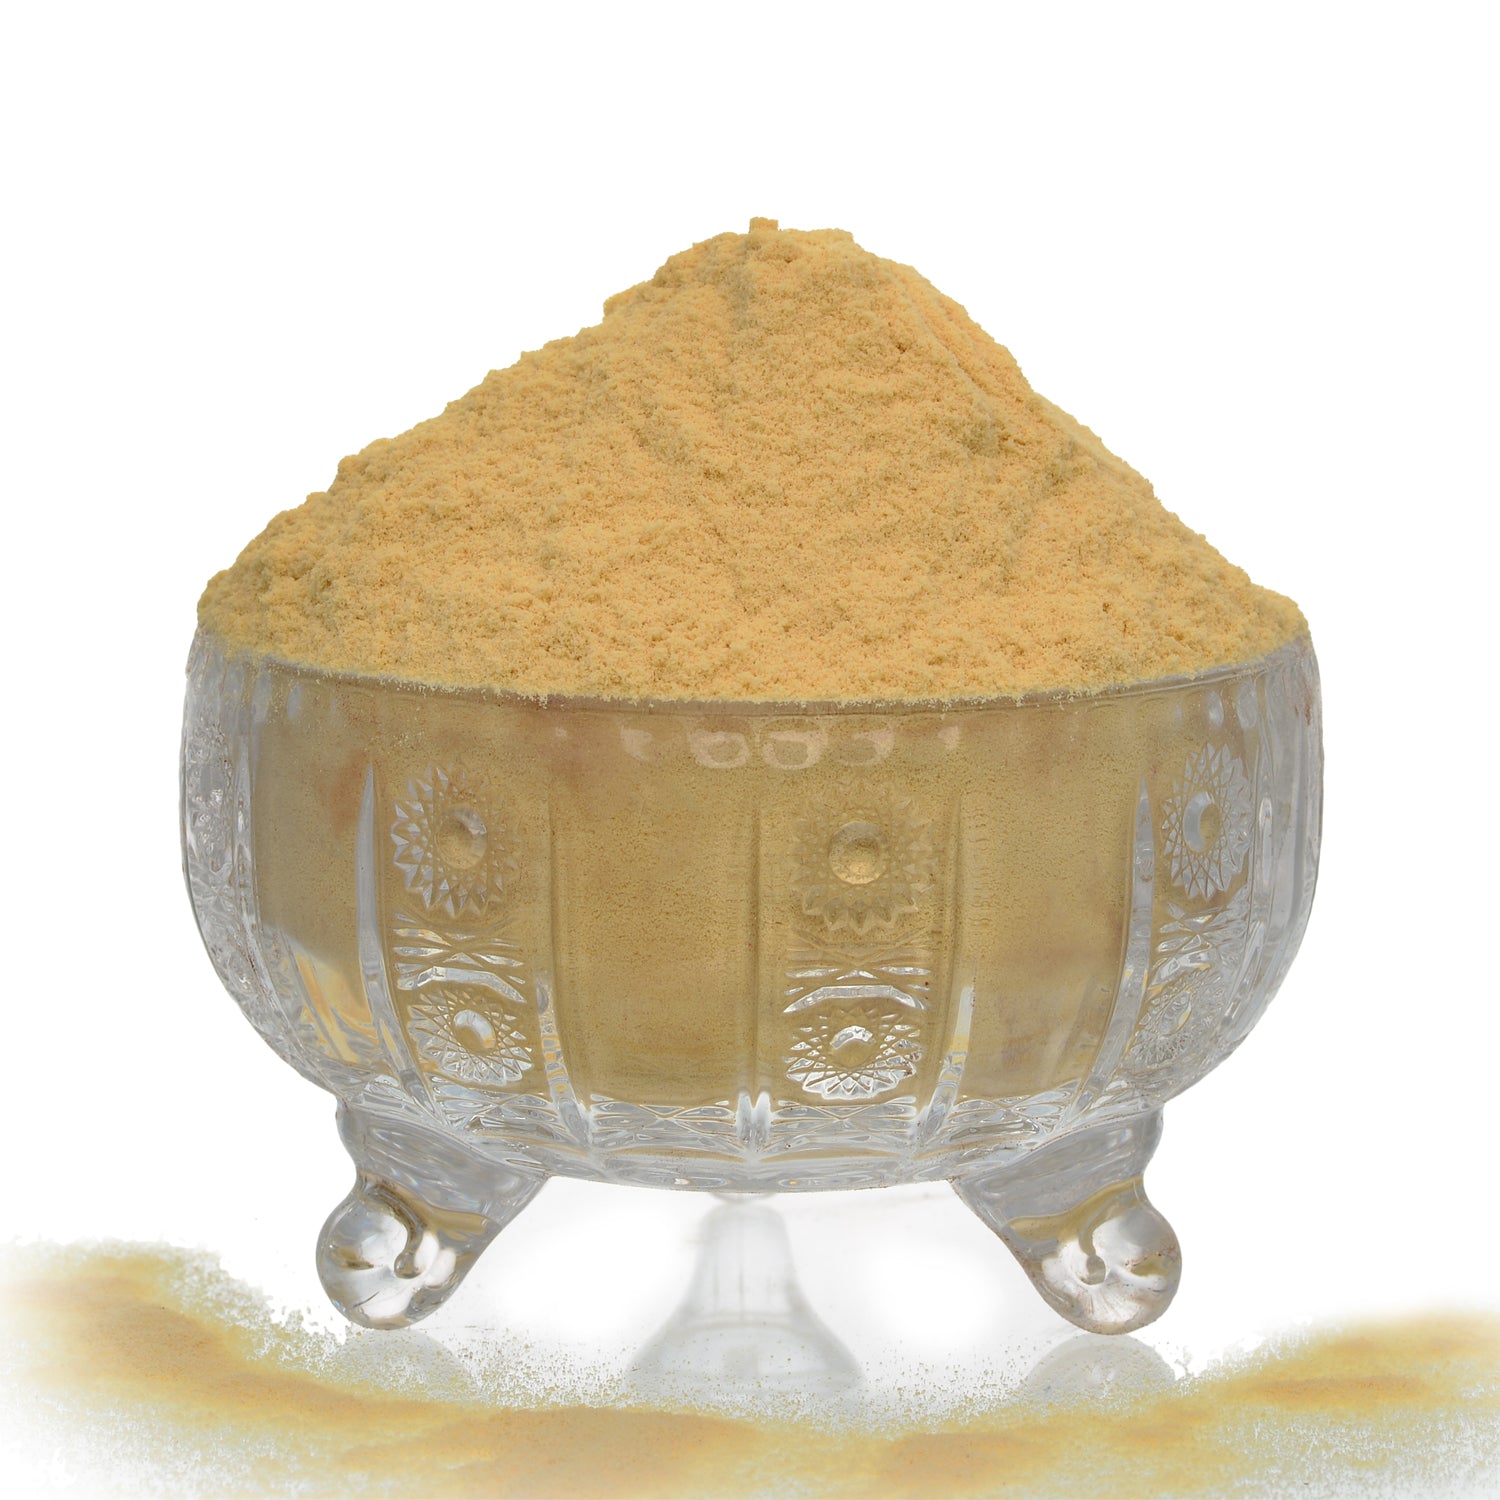 Soya Drink Powder - 23.8% Protein